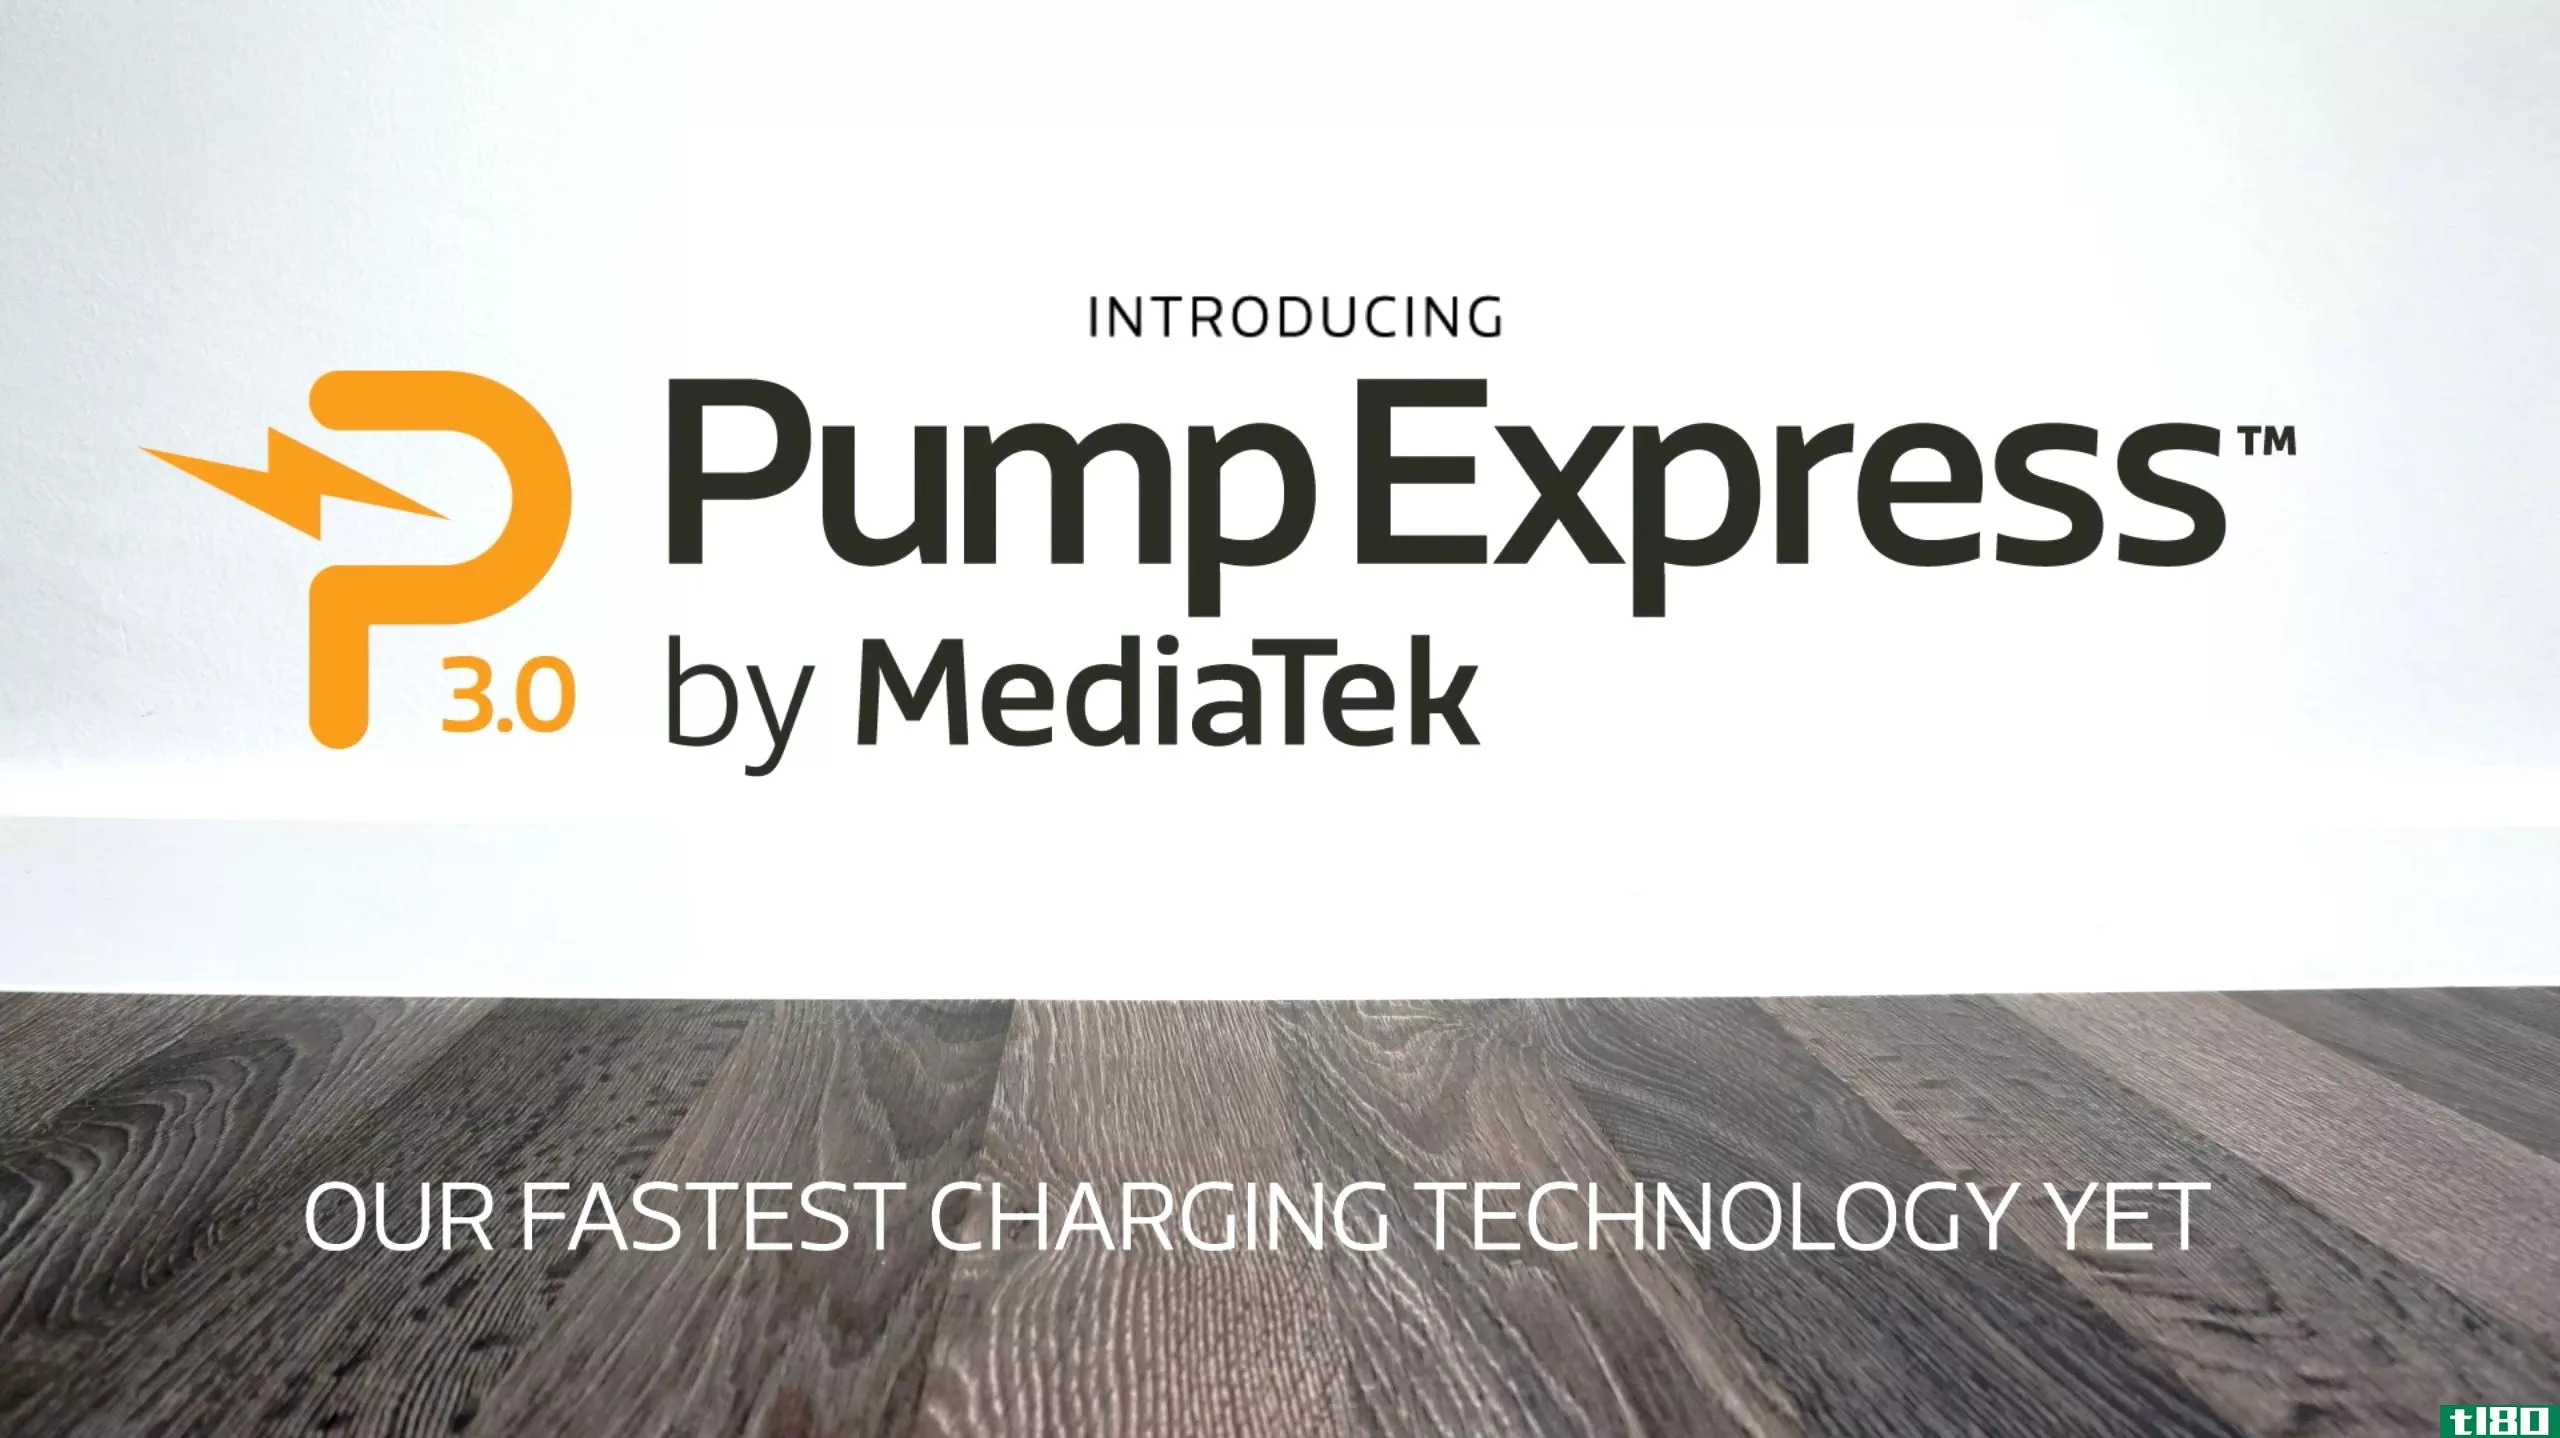 联发科推出最新的快速充电解决方案pump express 3.0